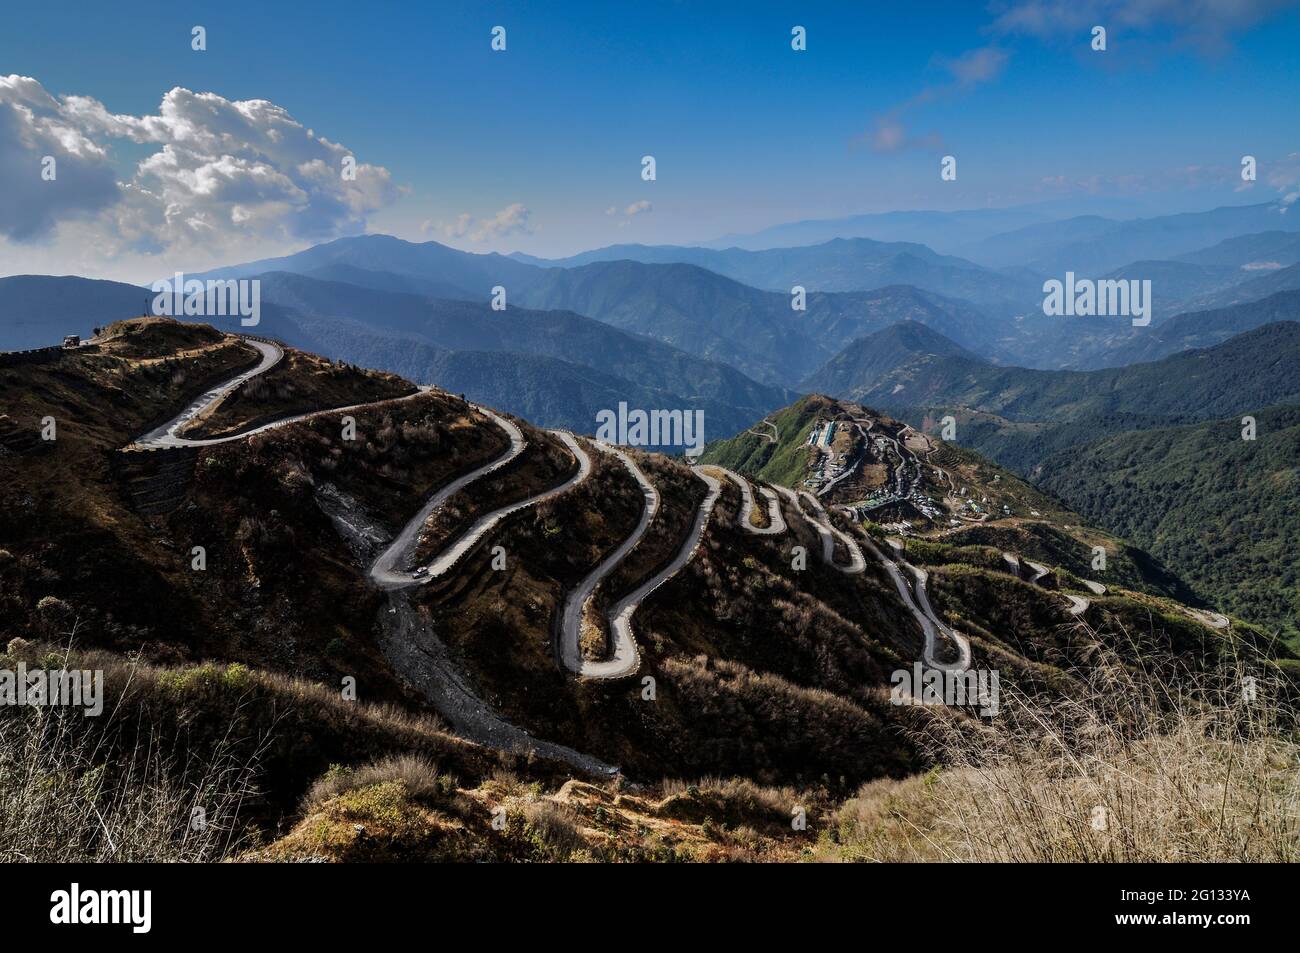 Schöne kurvige Straßen auf der alten Seidenstraße, Seidenhandelsroute zwischen China und der indischen Grenze, Sikkim, Indien. Teil des OBOR-Projekts von China für den Handel. Stockfoto